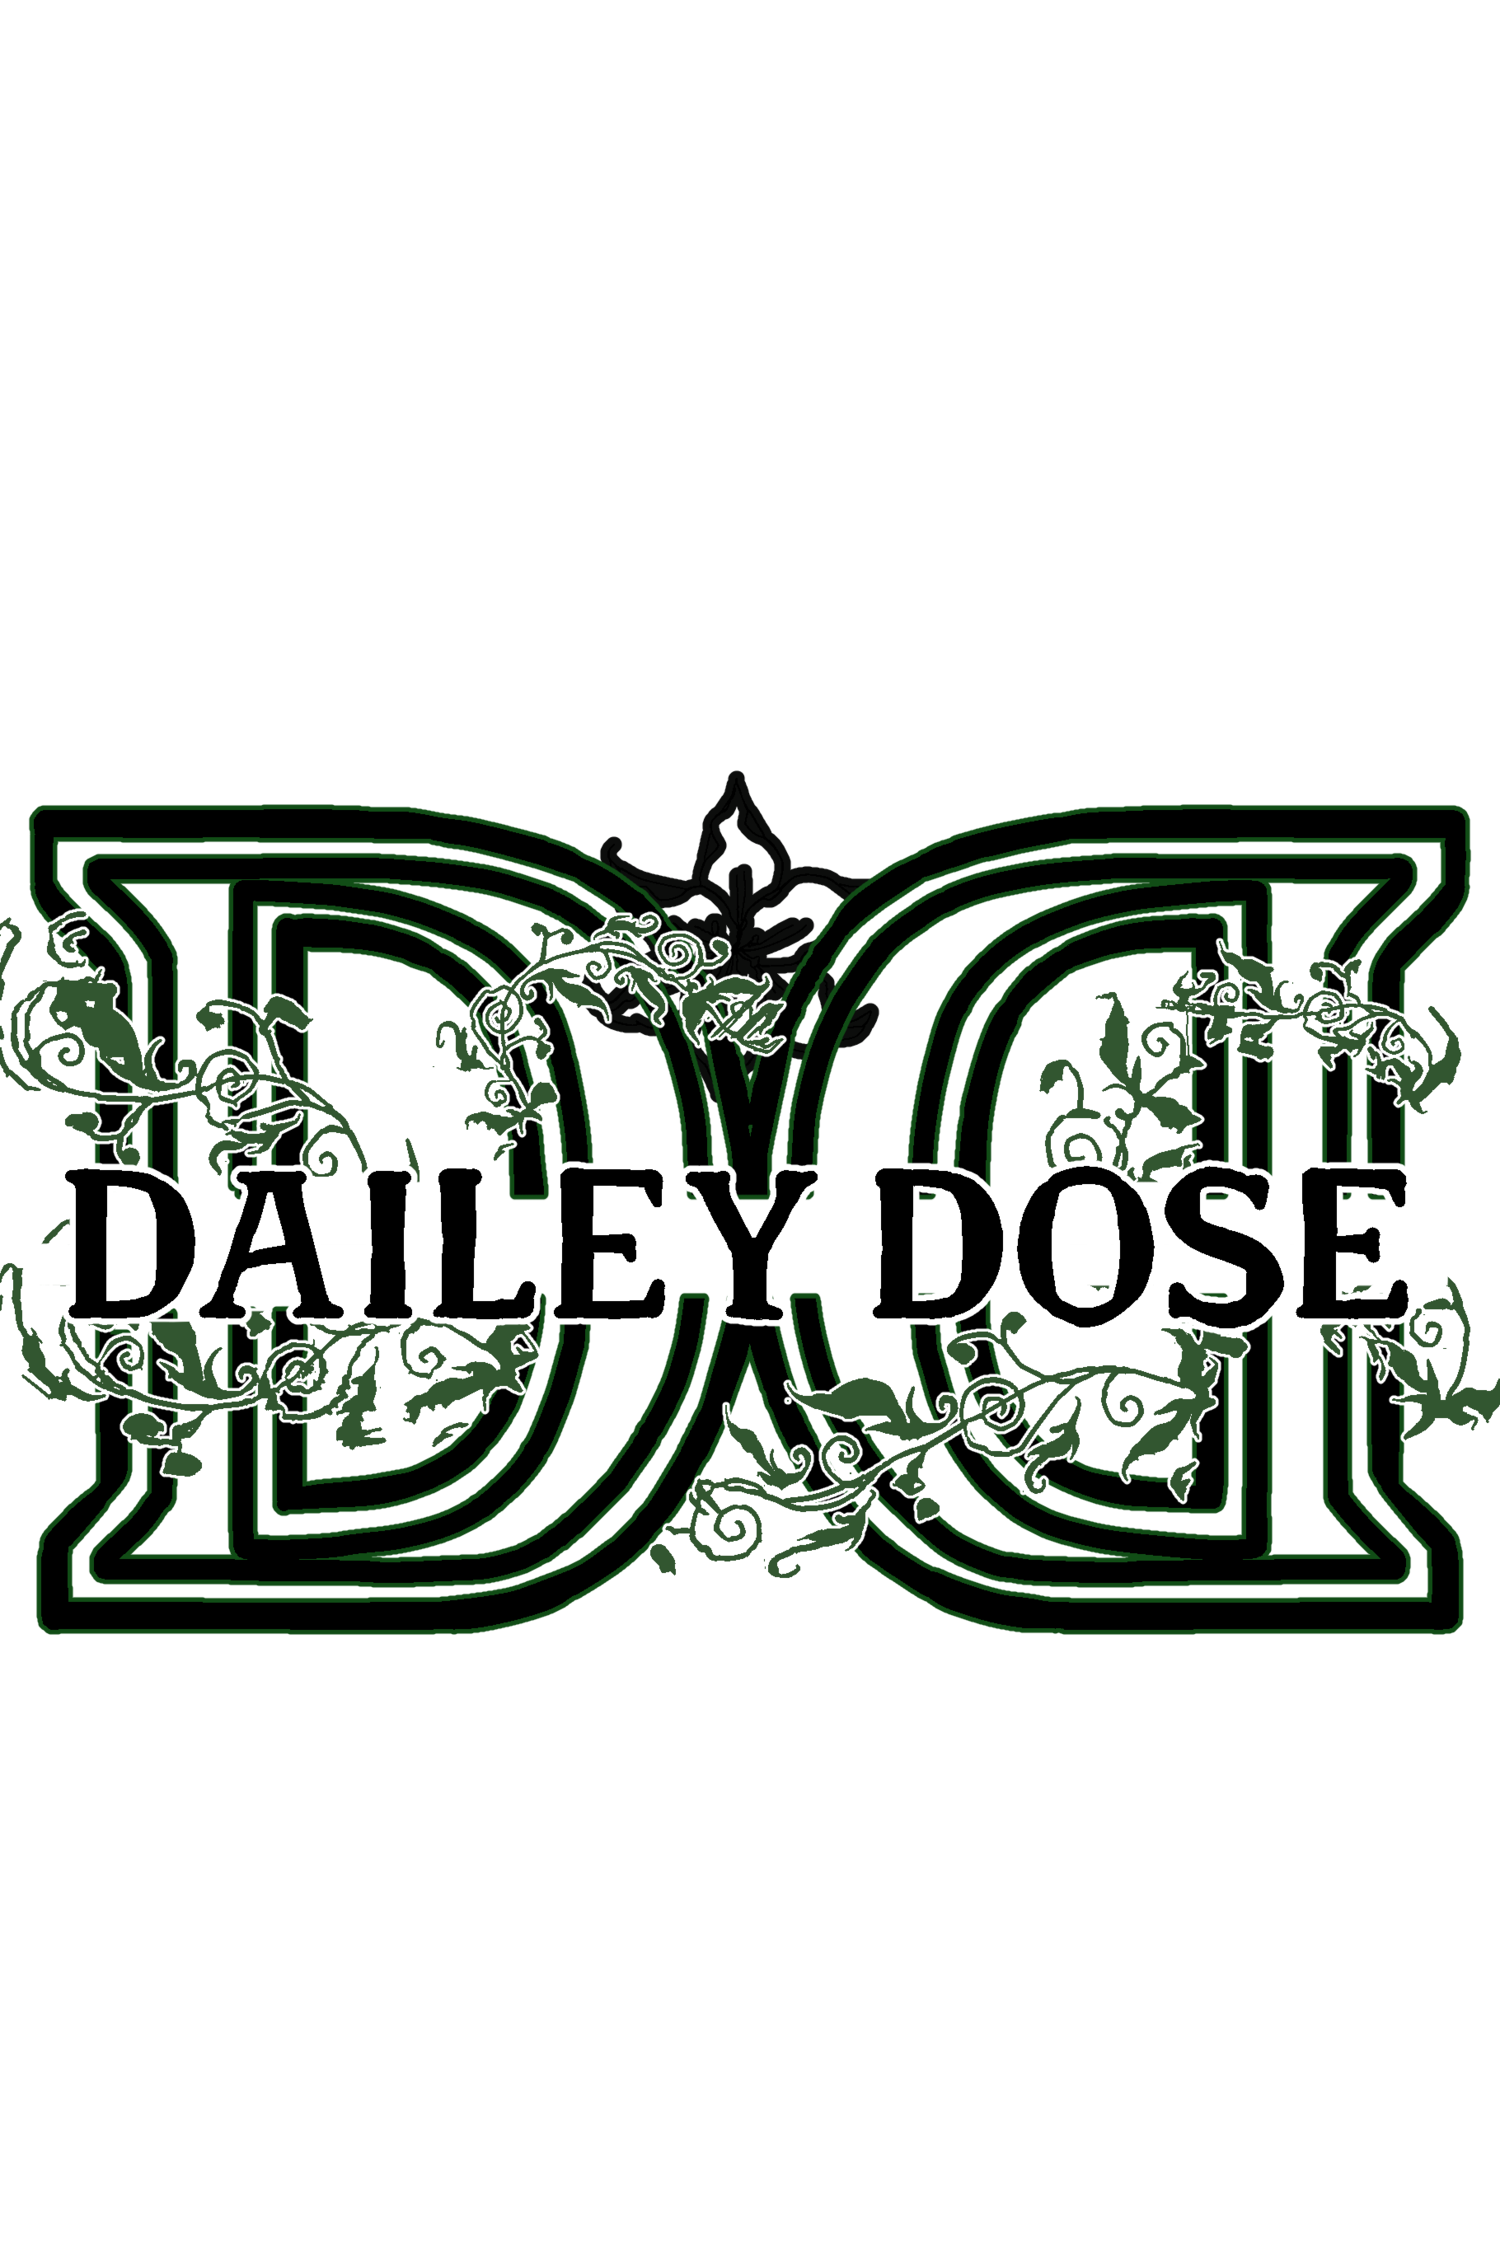 Dailey Dose 